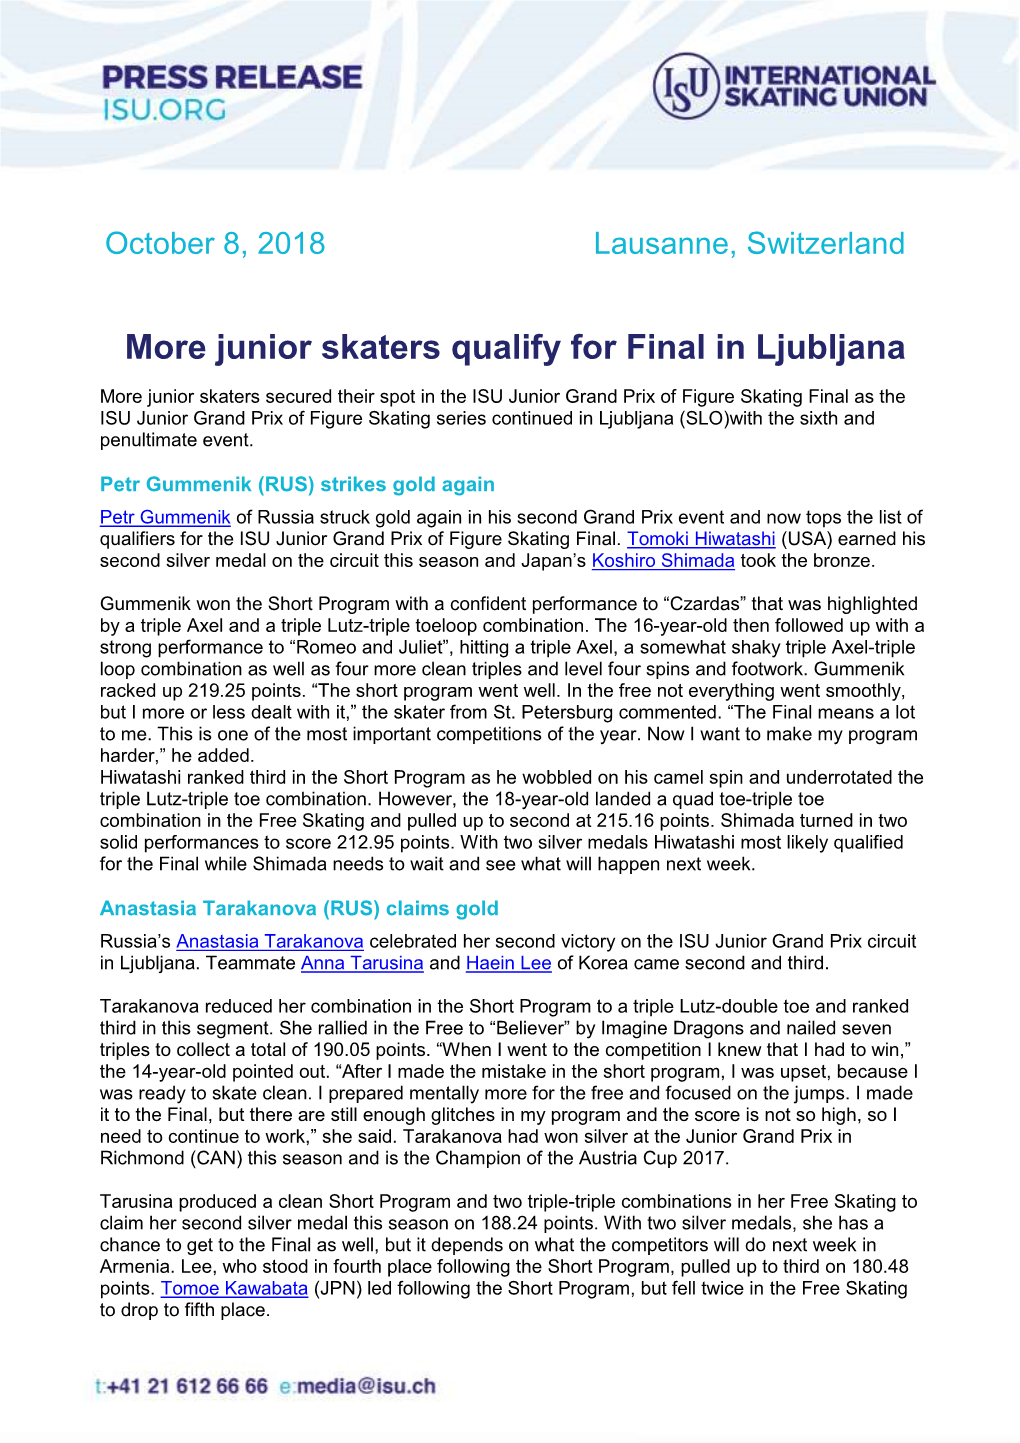 More Junior Skaters Qualify for Final in Ljubljana